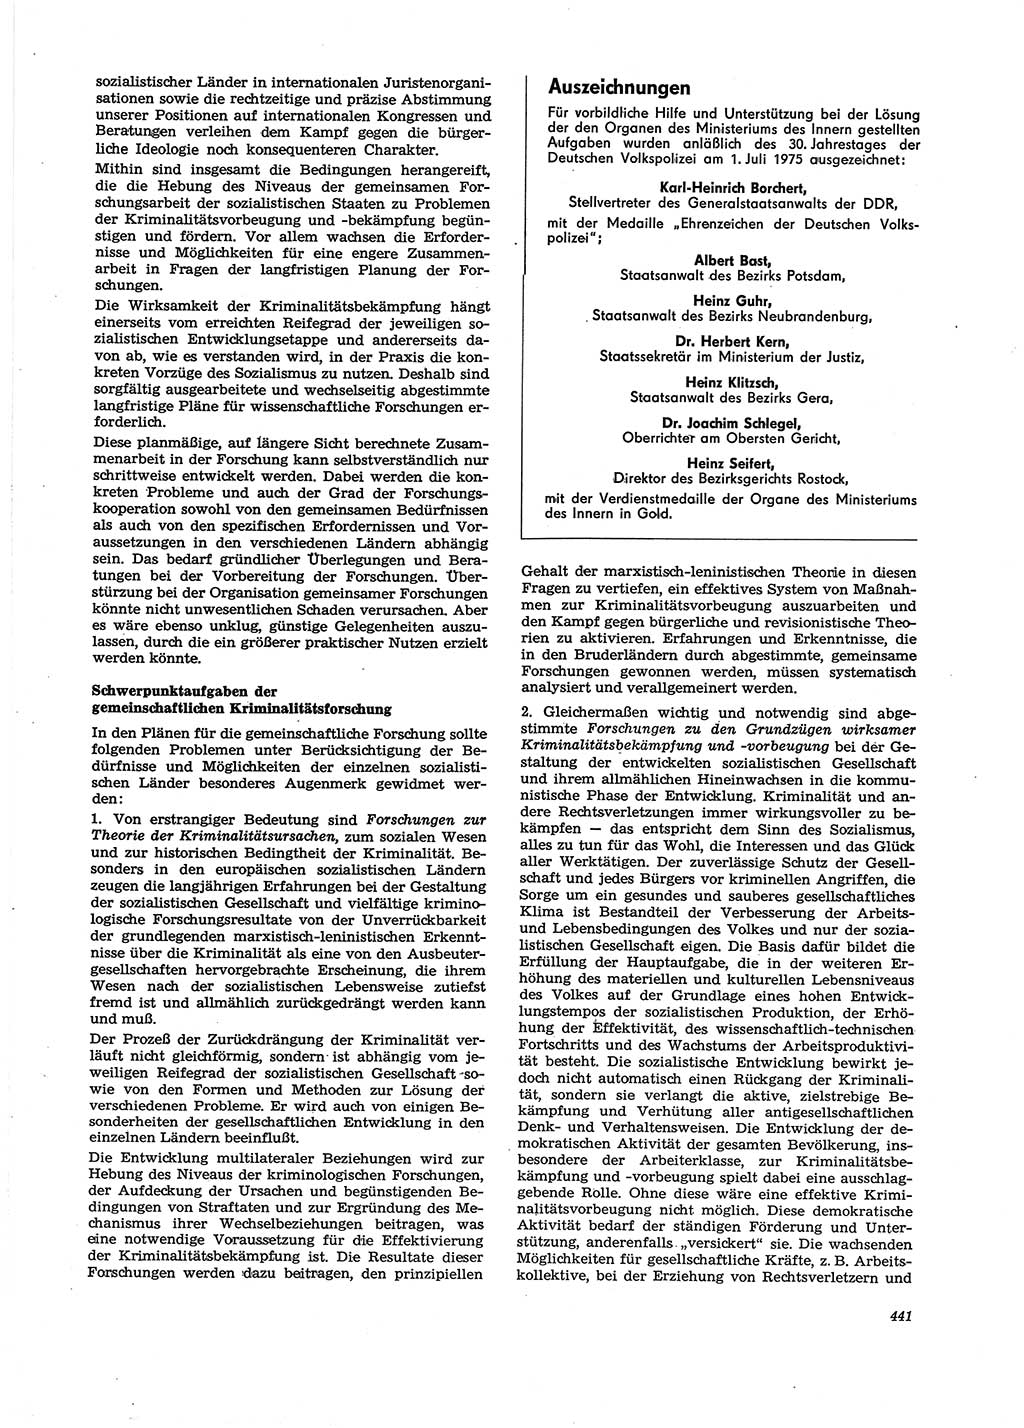 Neue Justiz (NJ), Zeitschrift für Recht und Rechtswissenschaft [Deutsche Demokratische Republik (DDR)], 29. Jahrgang 1975, Seite 441 (NJ DDR 1975, S. 441)